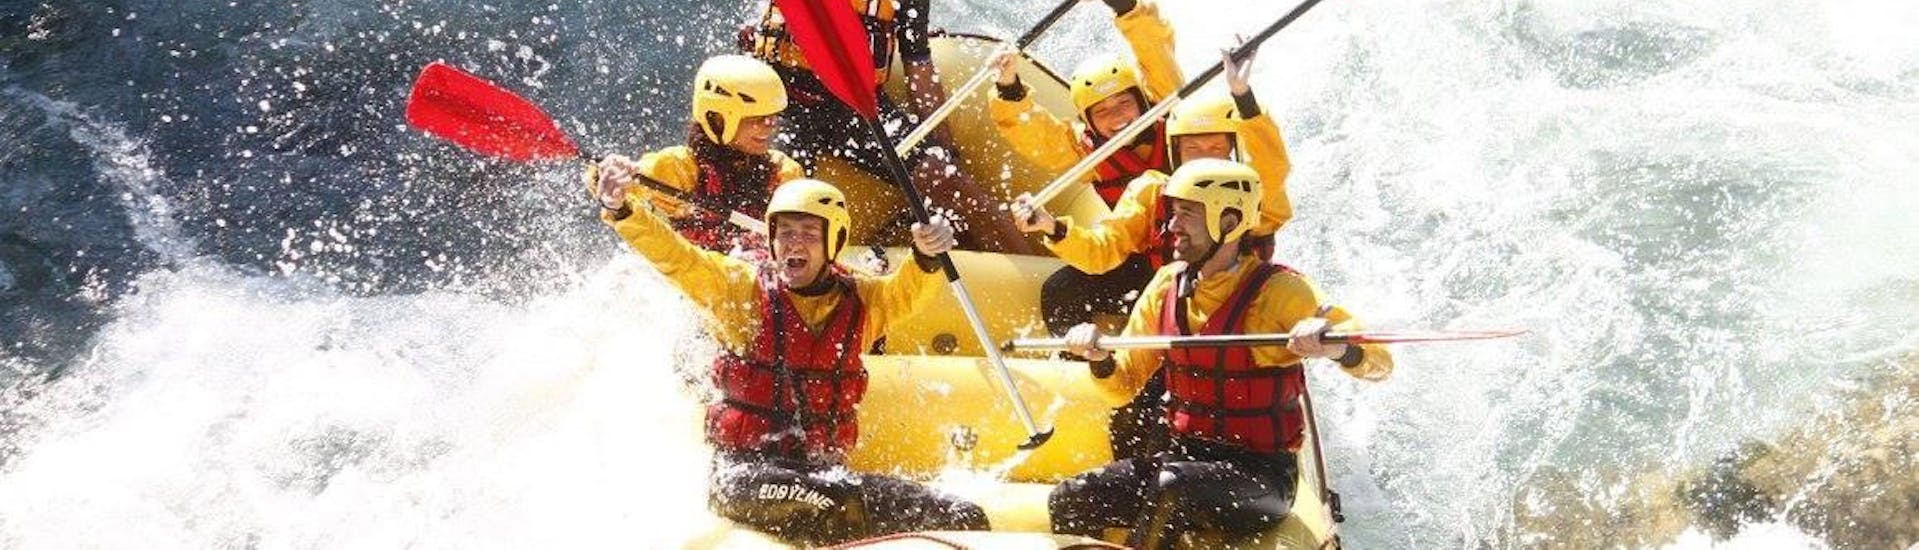 Persone che si godono il Rafting sul fiume Sesia - Panorama con Eddyline - The River Experience Valsesia.